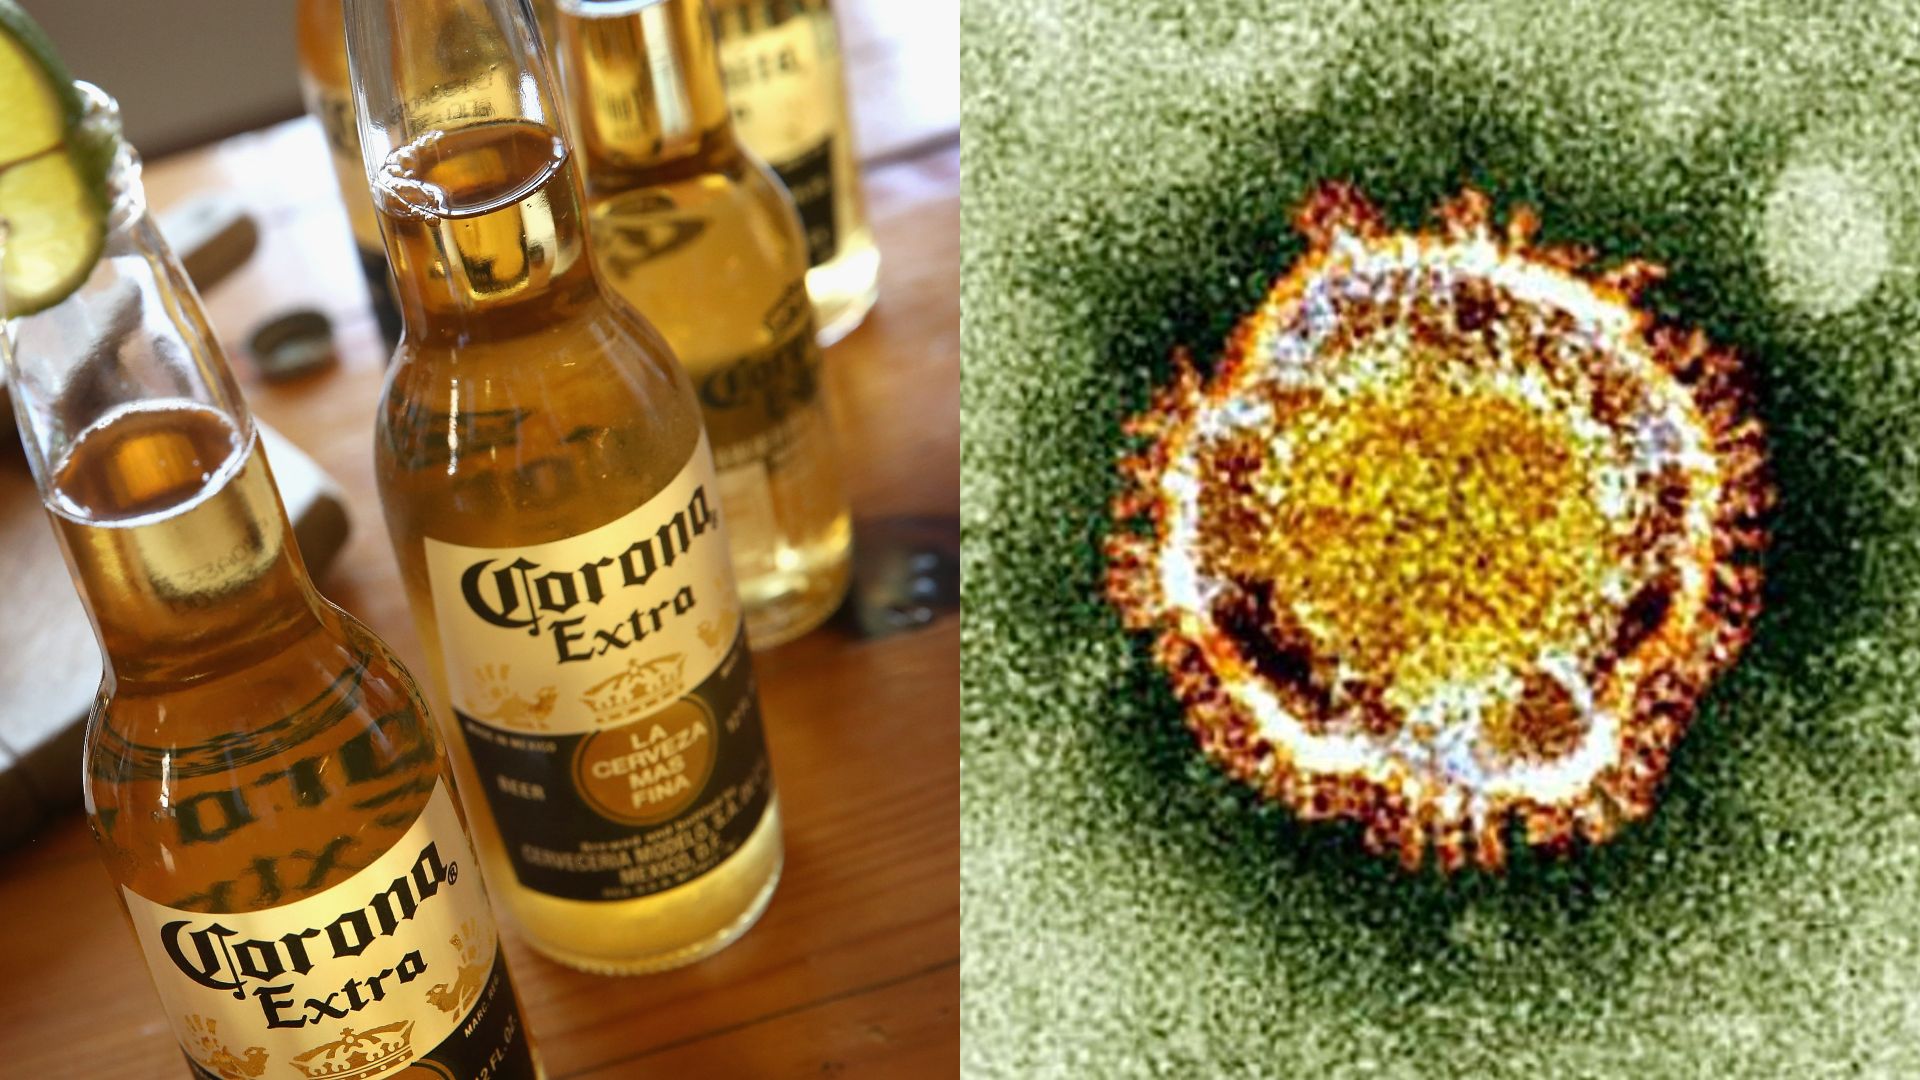 Le seul point commun entre le virus et la bière se trouve au niveau de l’origine des noms : "corona" signifie "couronne" en latin.